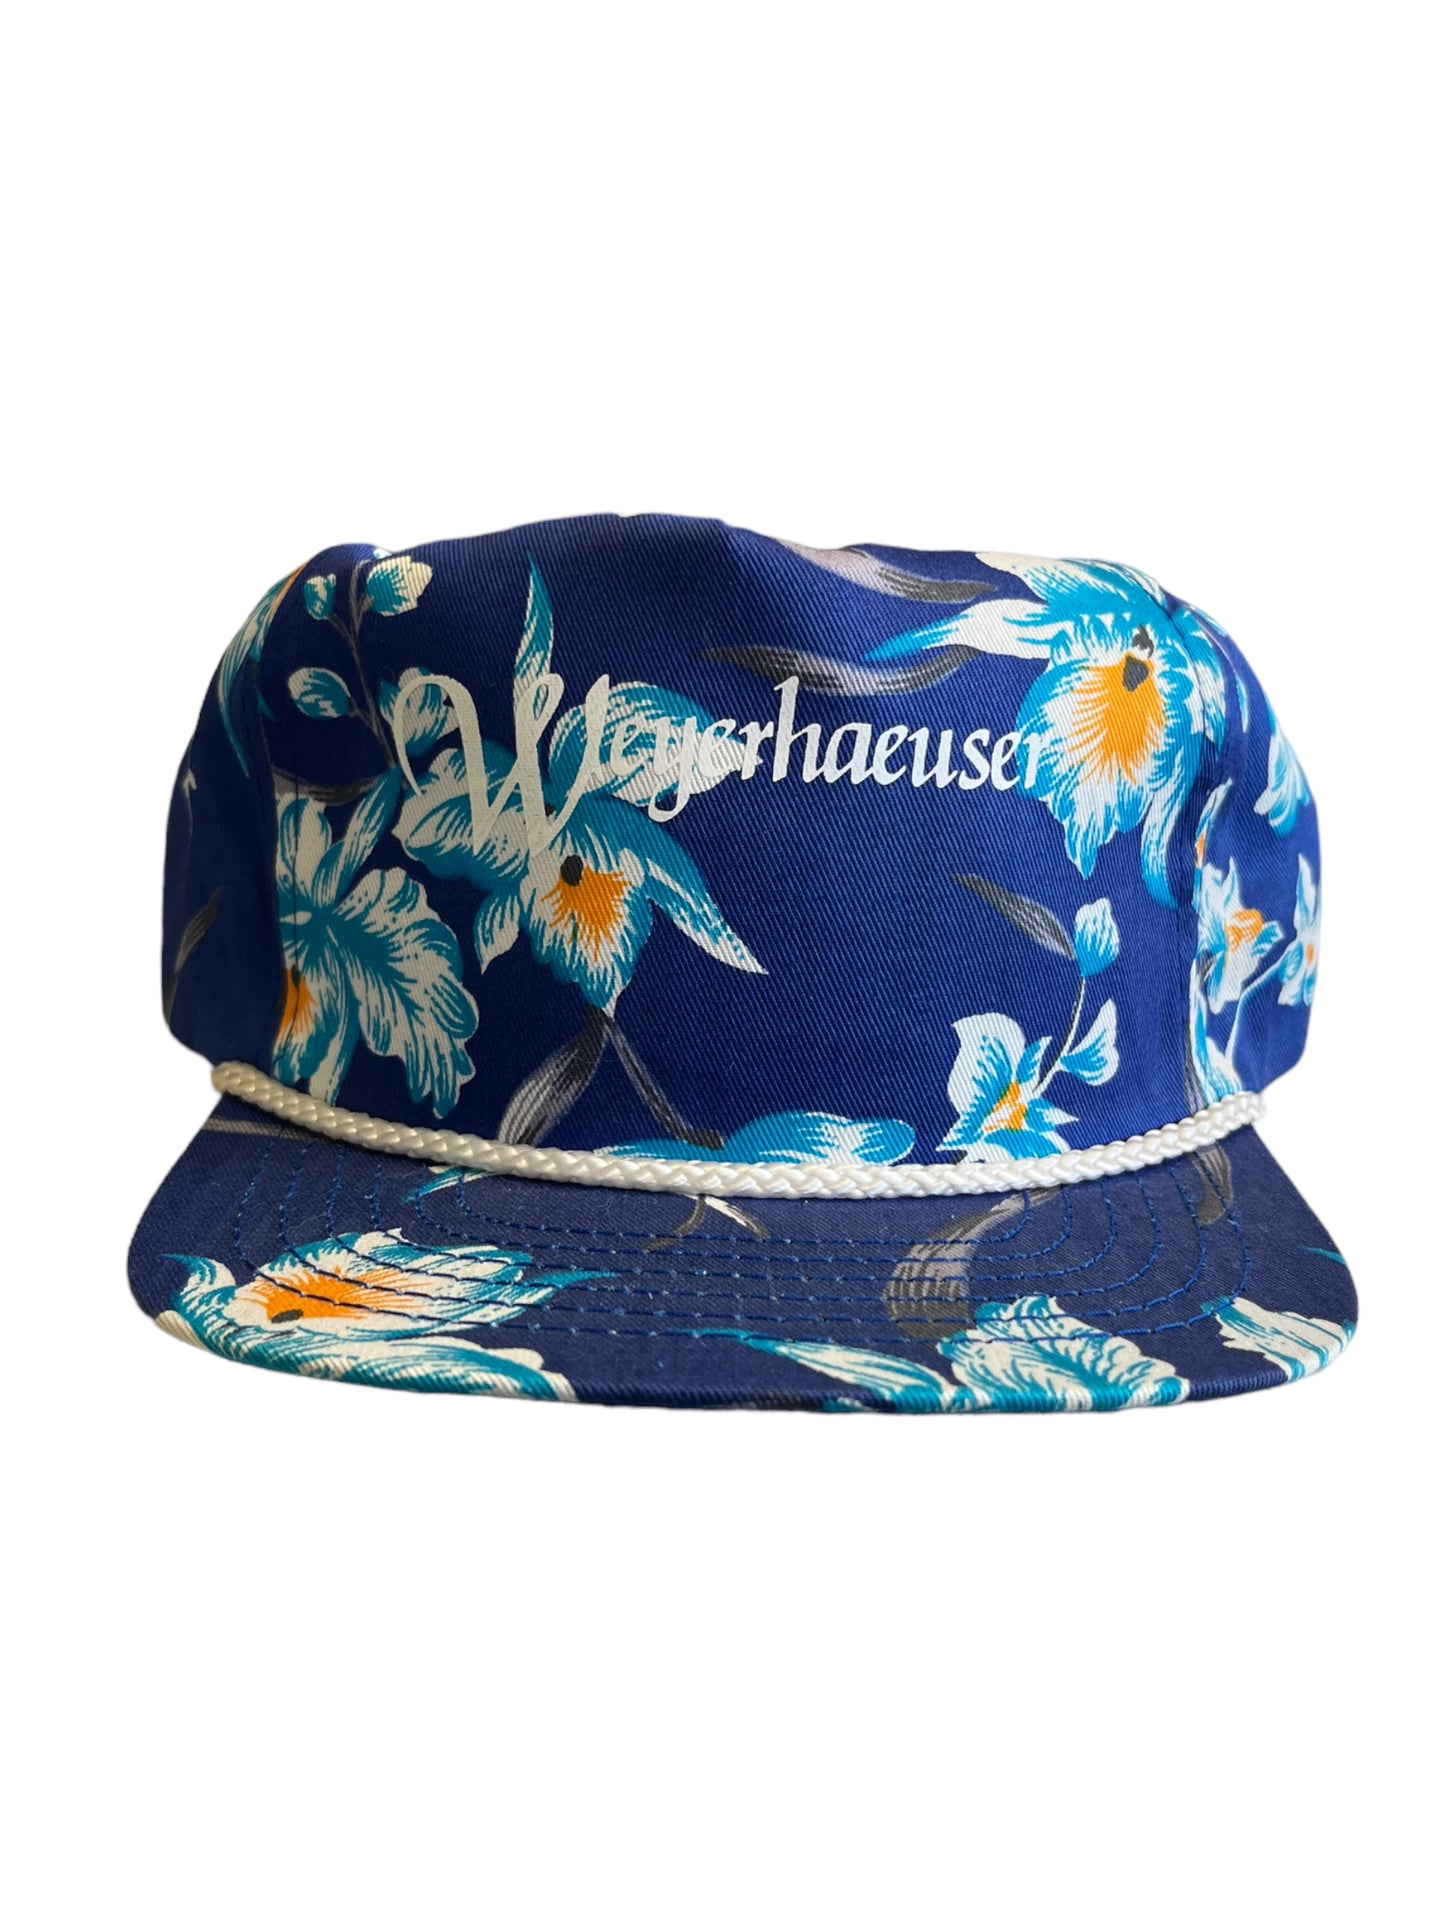 Vintage Weyerhaeuser Floral SnapBack Hat Brand New